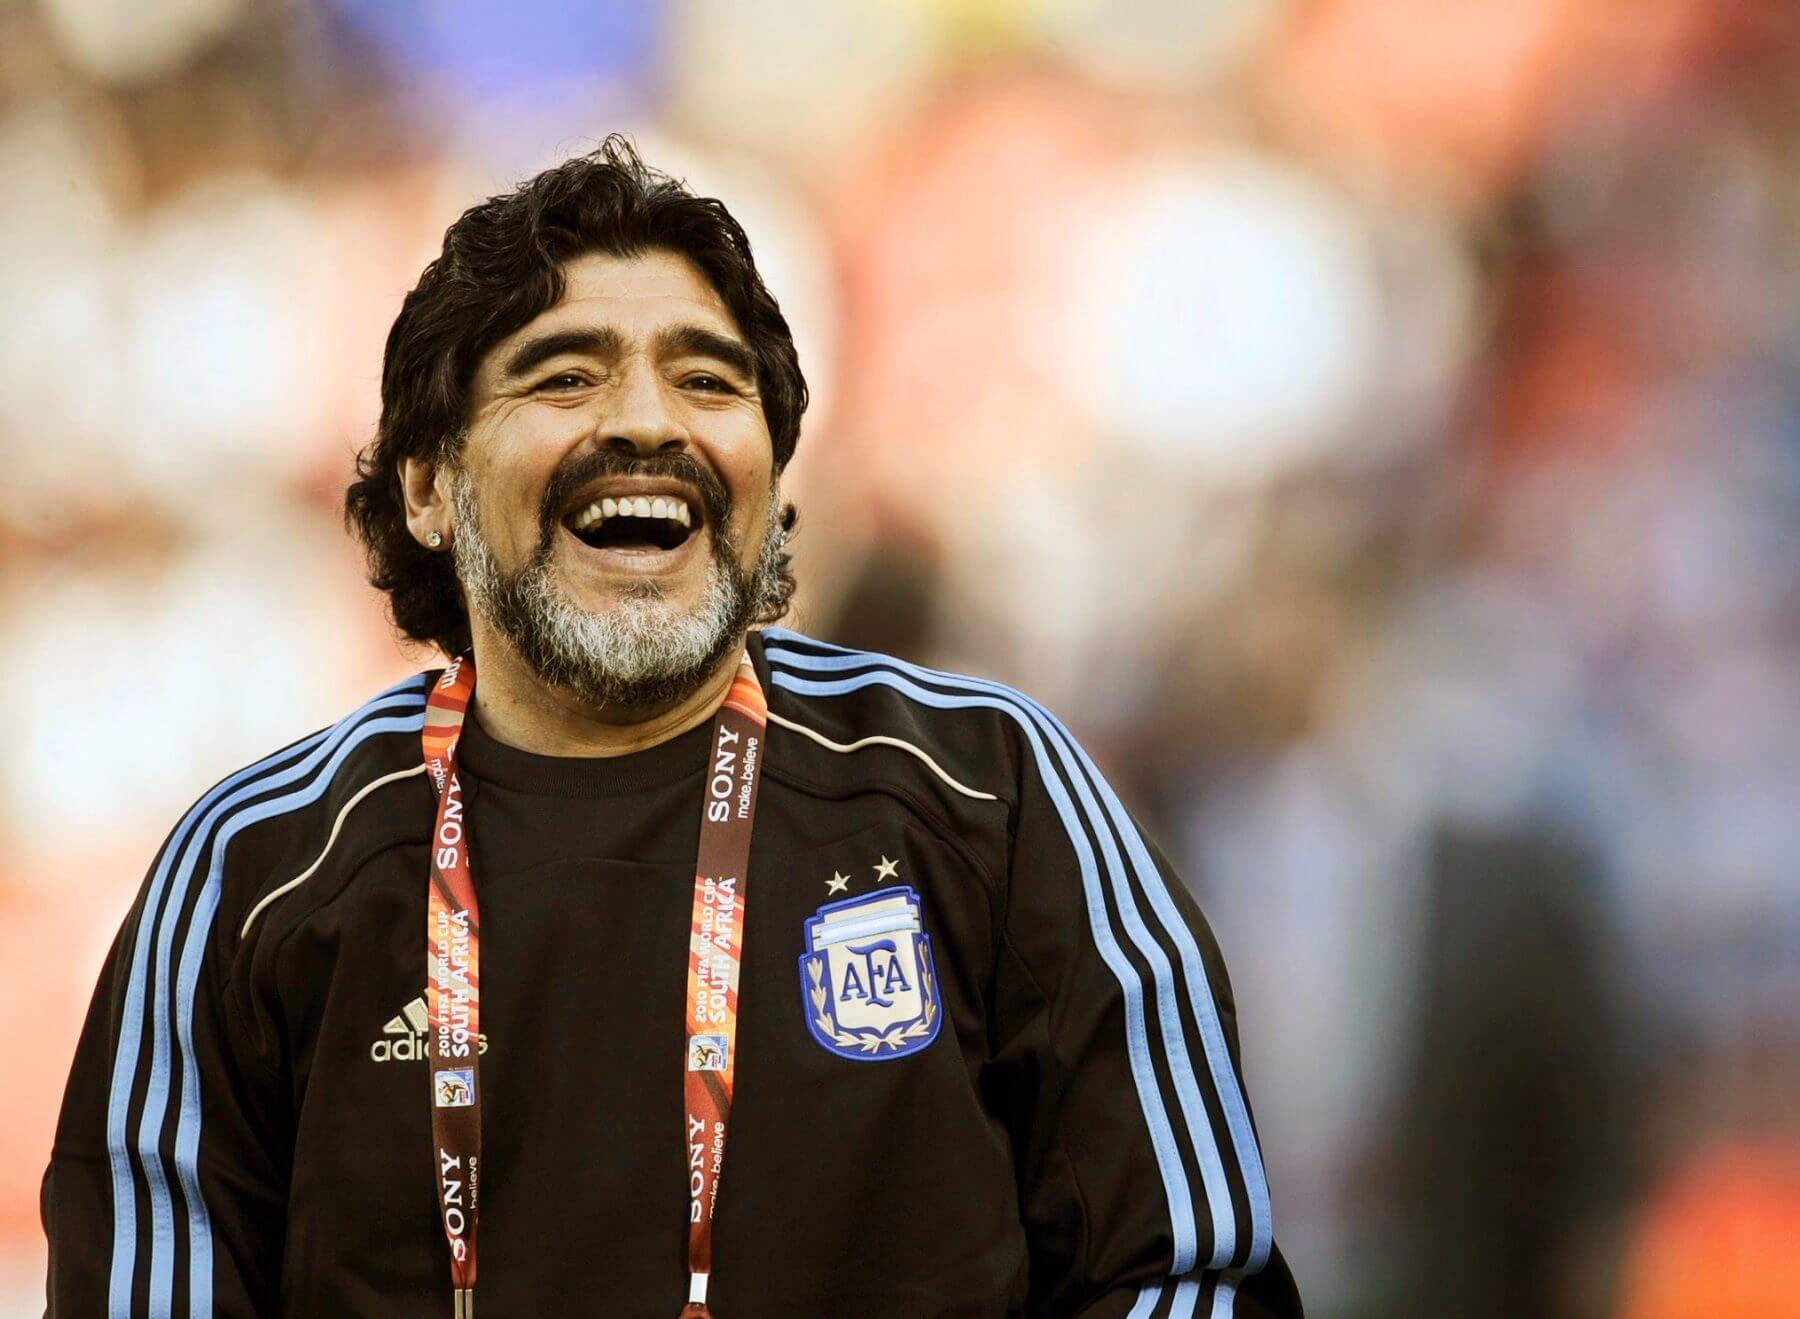 Maradona biography diego Diego Maradona